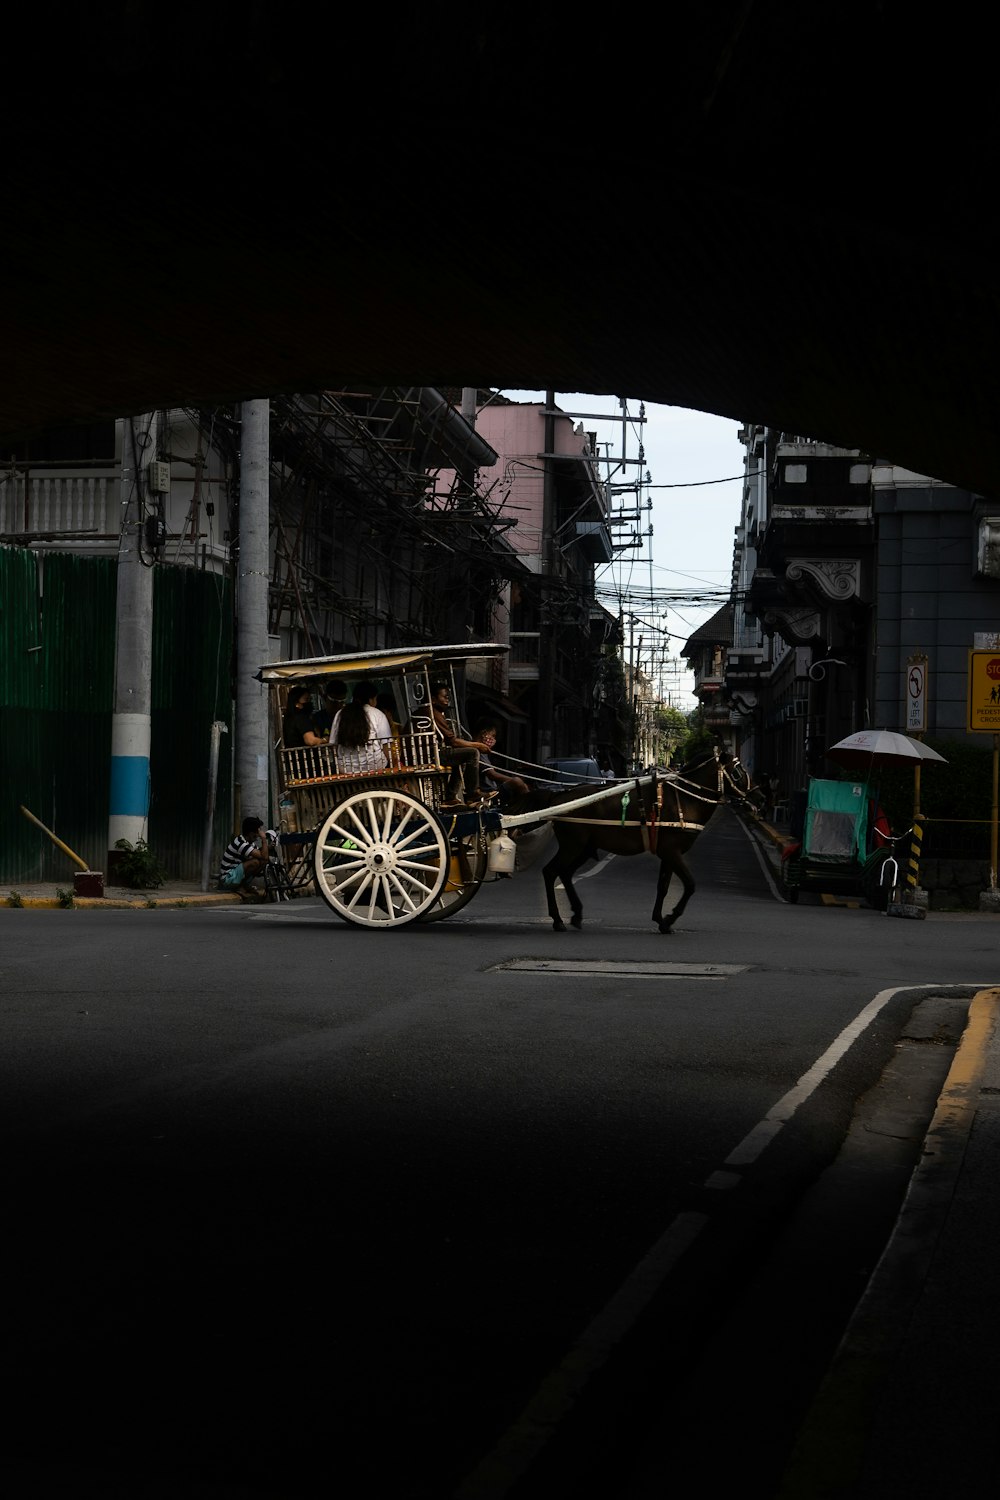 Un carruaje tirado por caballos en una calle de la ciudad